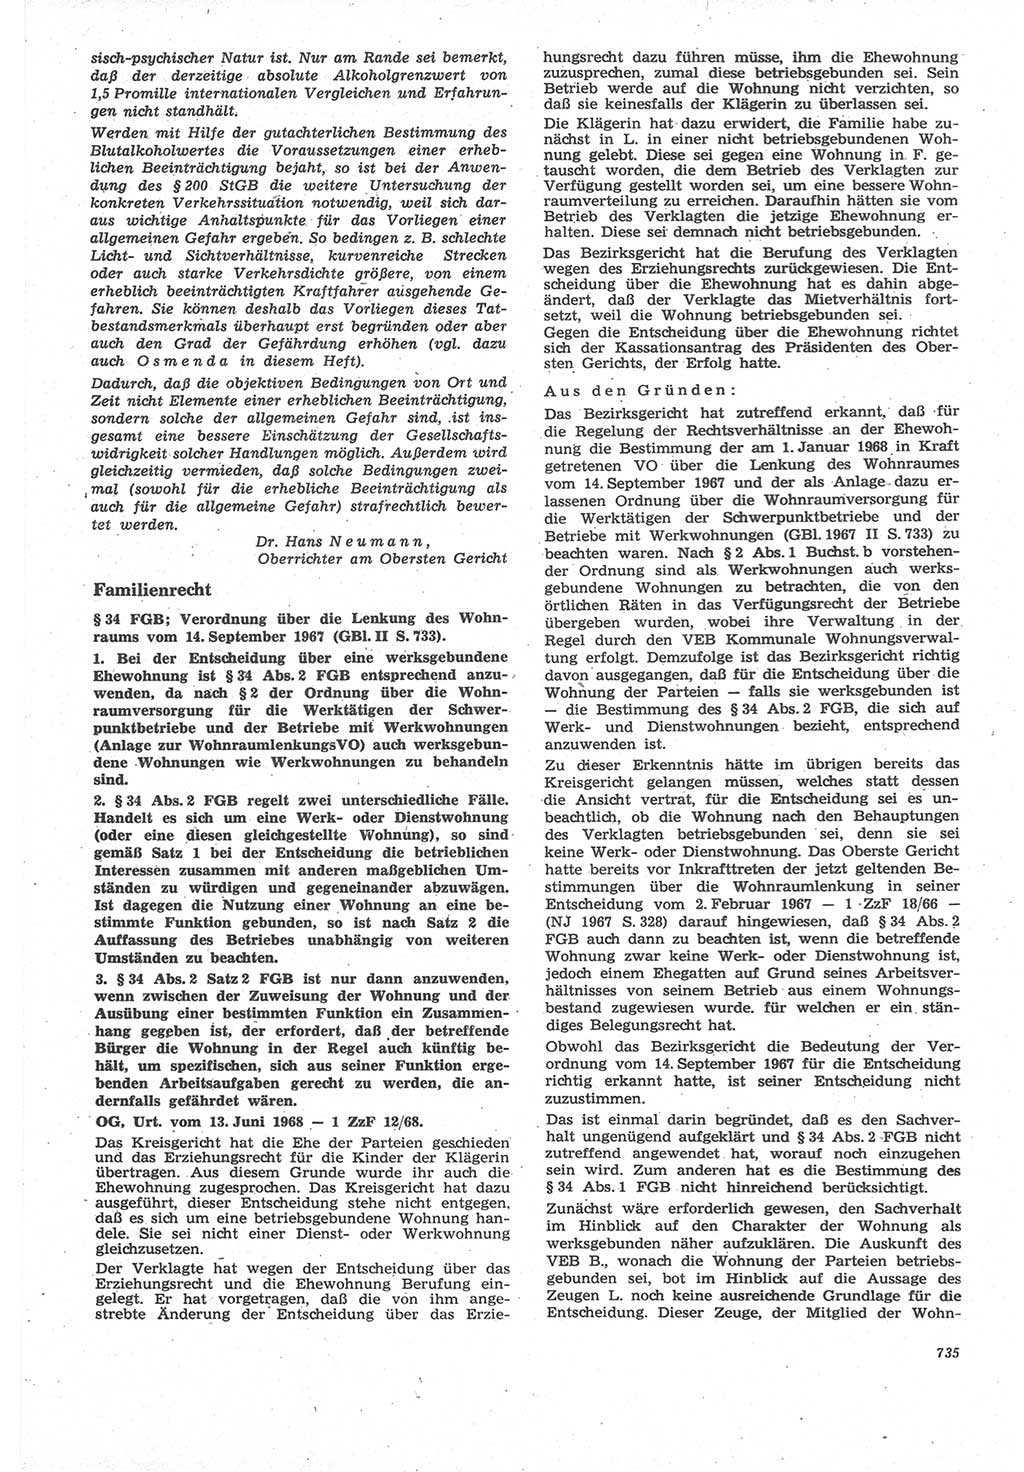 Neue Justiz (NJ), Zeitschrift für Recht und Rechtswissenschaft [Deutsche Demokratische Republik (DDR)], 22. Jahrgang 1968, Seite 735 (NJ DDR 1968, S. 735)